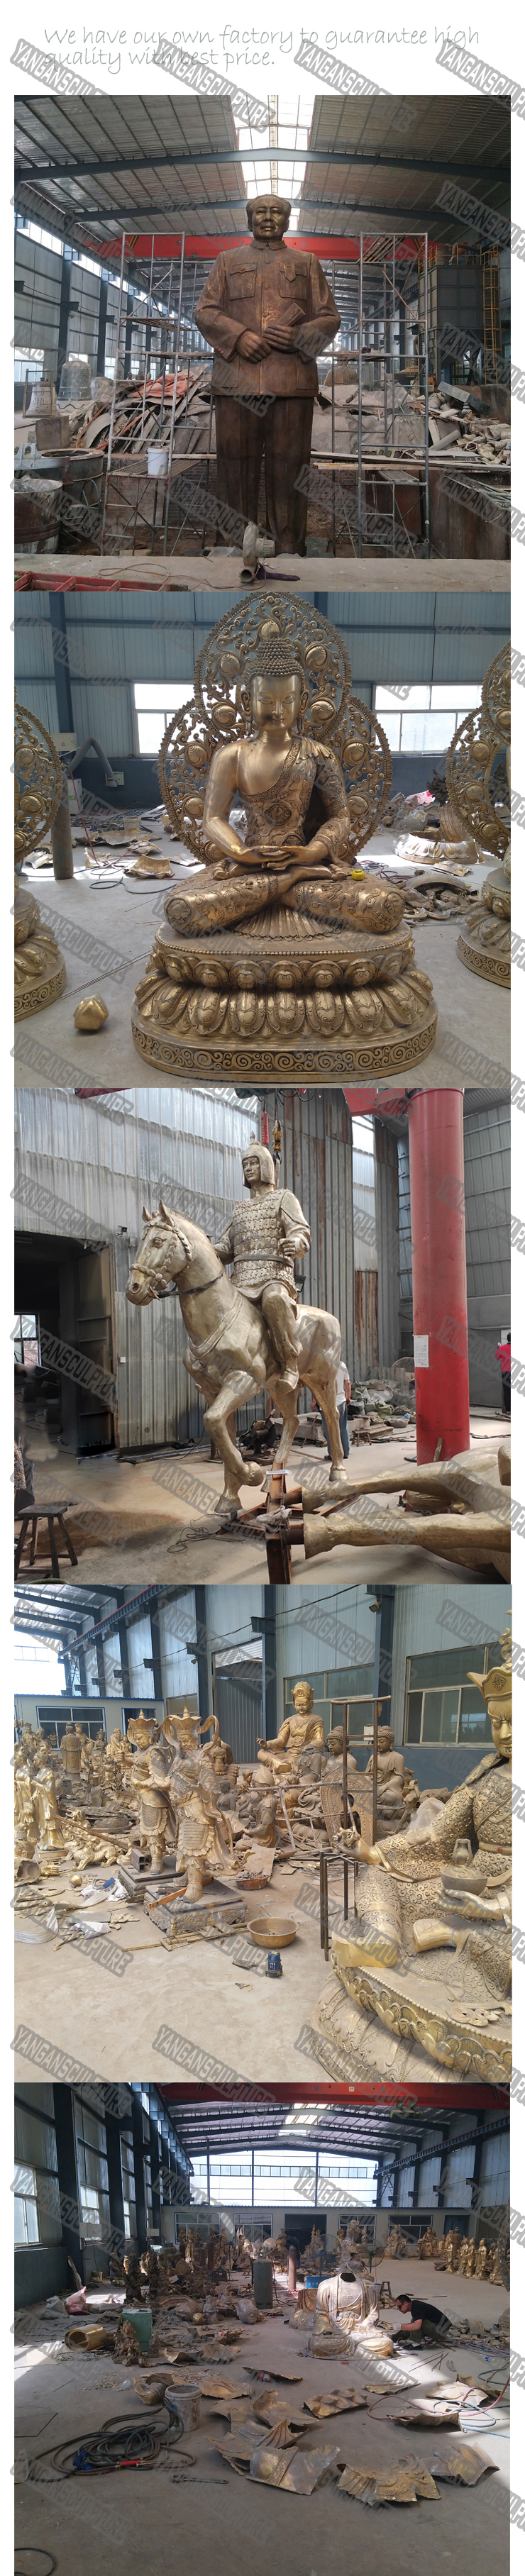 Shitje e nxehtë e kopshtit popullor statujë e madhe e kalit prej bronzi me përmasa reale